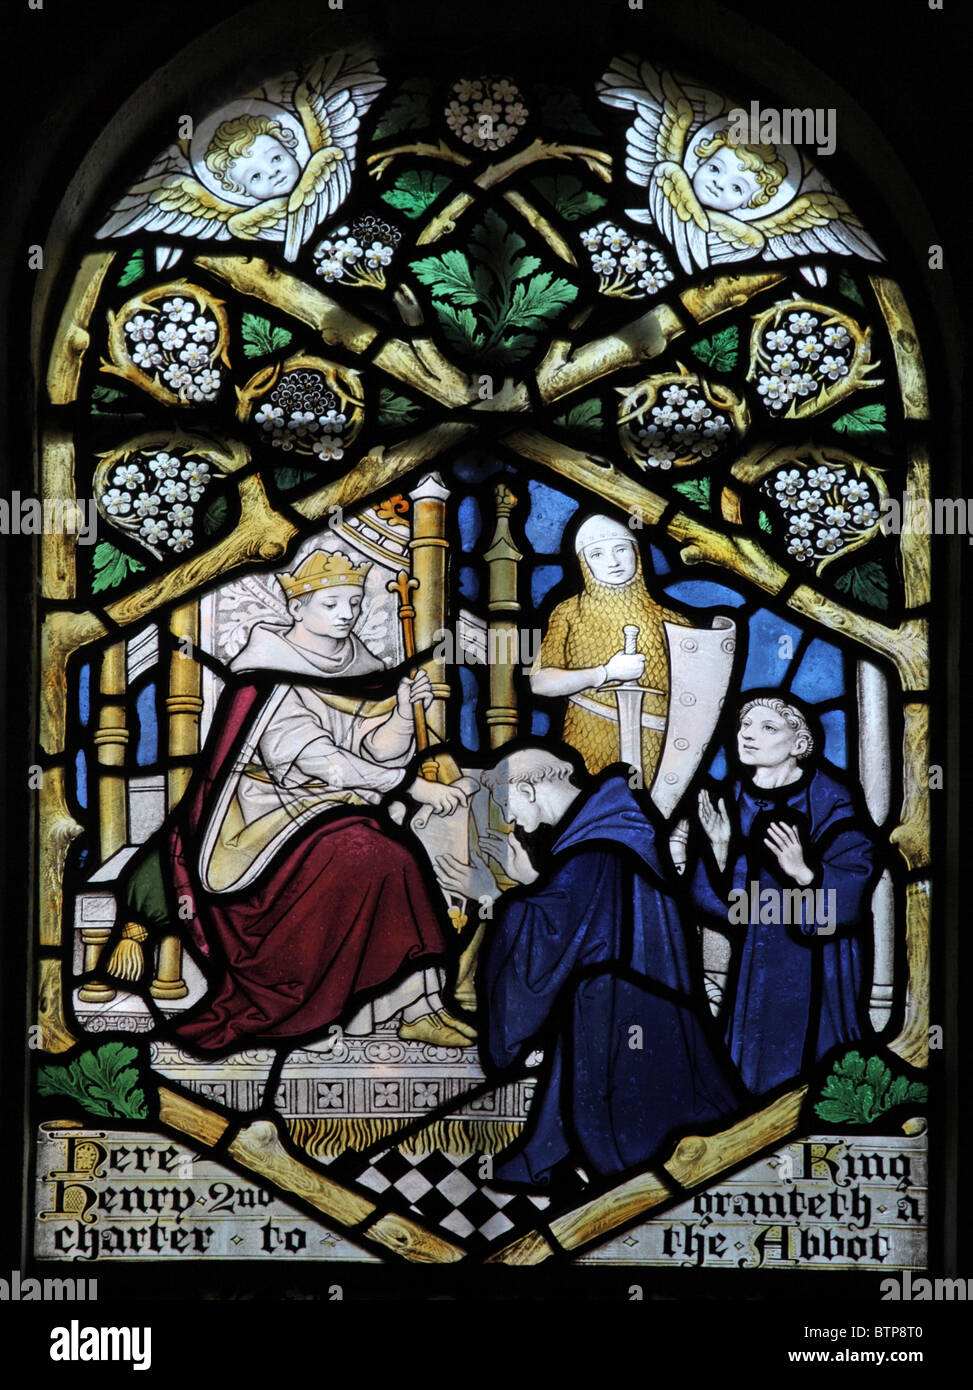 Buntglasfenster von Frederick Charles Eden, das König Heinrich II. Von England zeigt, der einem Abt von Glastonbury, Longbridge Deverill, eine Charta erteilt hat Stockfoto